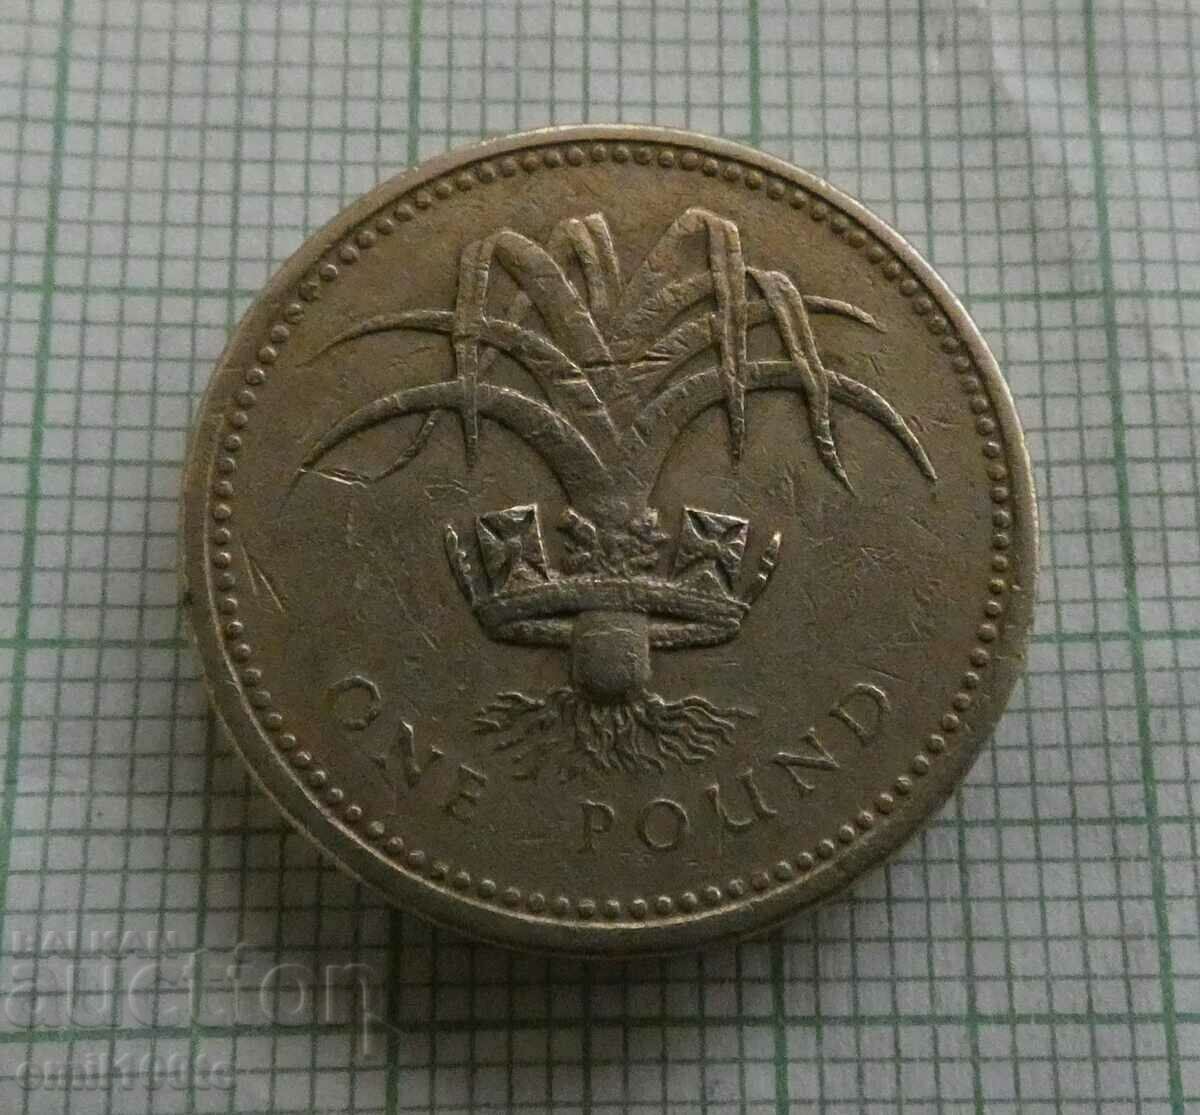 1 pound 1985 Great Britain